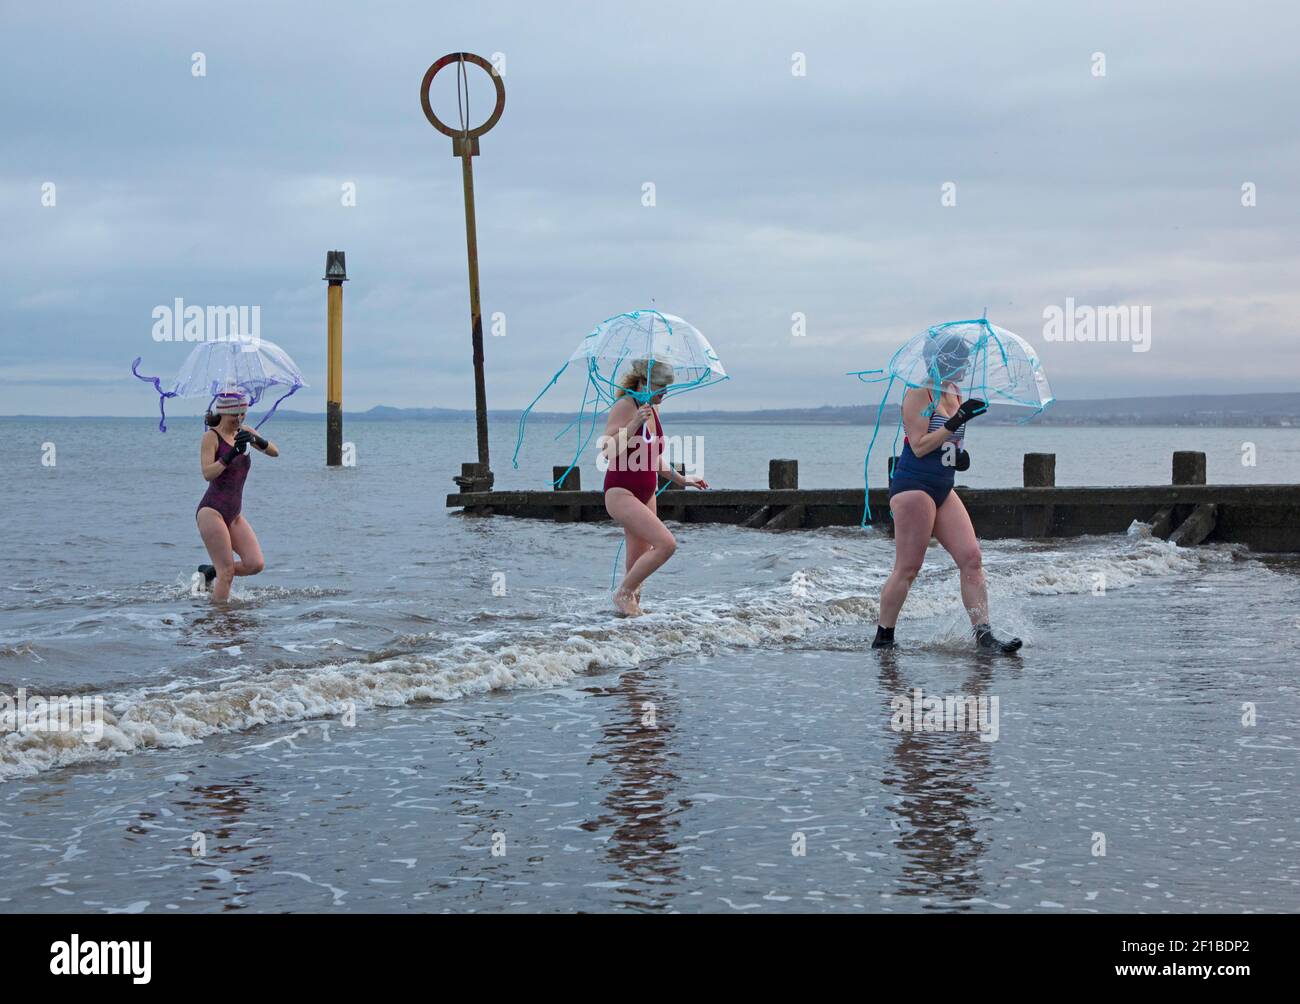 Día Internacional de la Mujer (IWD) - 8th de marzo de 2021.Portobello, Edimburgo, Escocia, Reino Unido. Pequeños grupos de mujeres tomaron un baño para marcar el IWD, diferente de 2020 cuando más de 300 mujeres llegaron a la costa. Foto: Damas de la base Multi-Cultural de la Familia, se han vinculado con el evento de recaudación de fondos #IWDSWIM2021 Wild Swimming Stories para recaudar fondos para las mujeres afectadas por la violencia basada en el Género y marcan la ocasión con brollies Jellyfish. Foto de stock